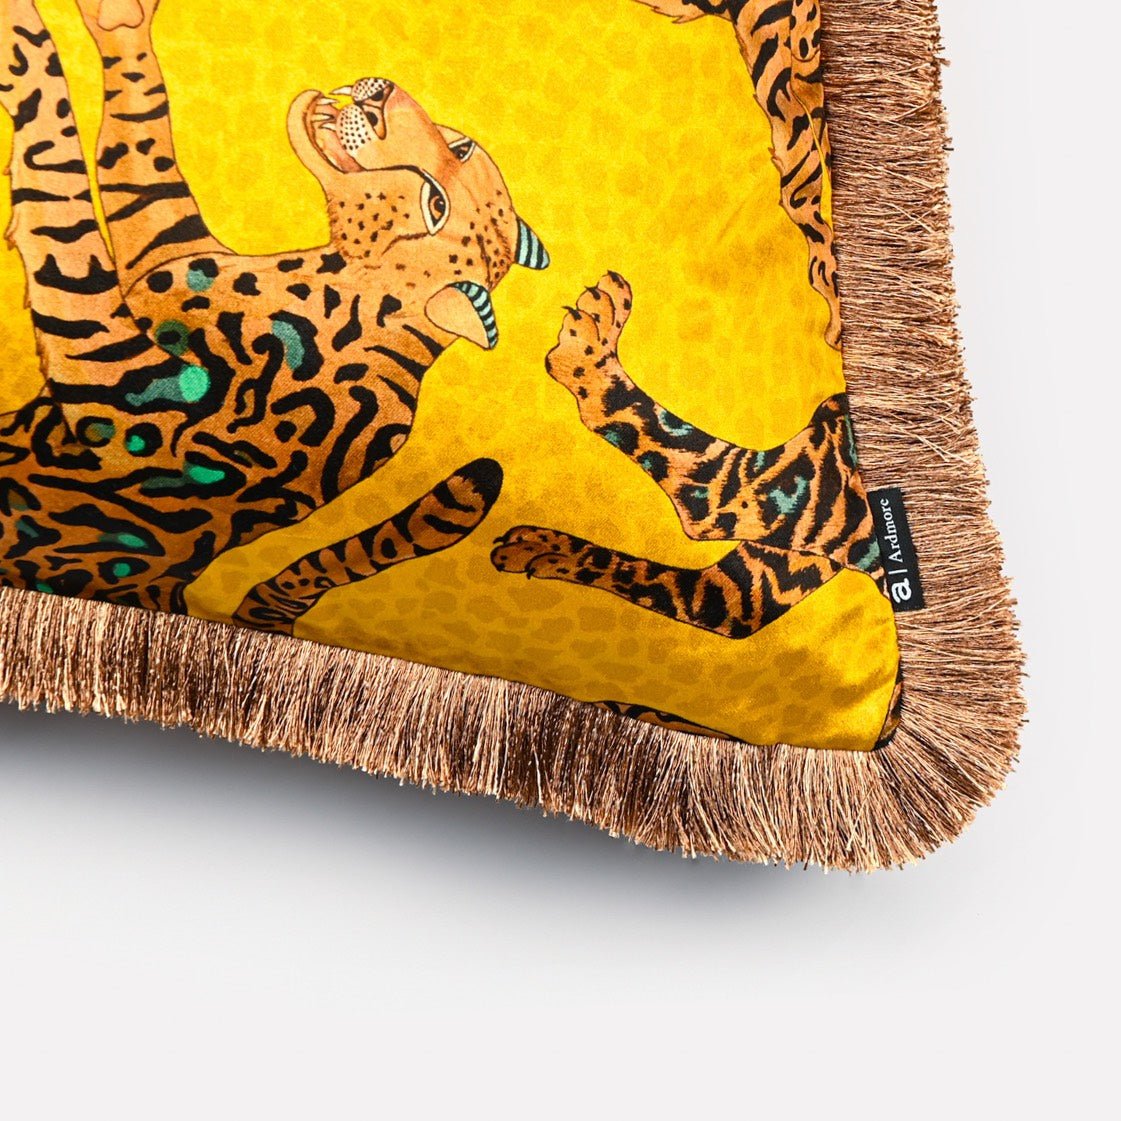 Cheetah Kings Gold Velvet Cushion Cover with Fringe